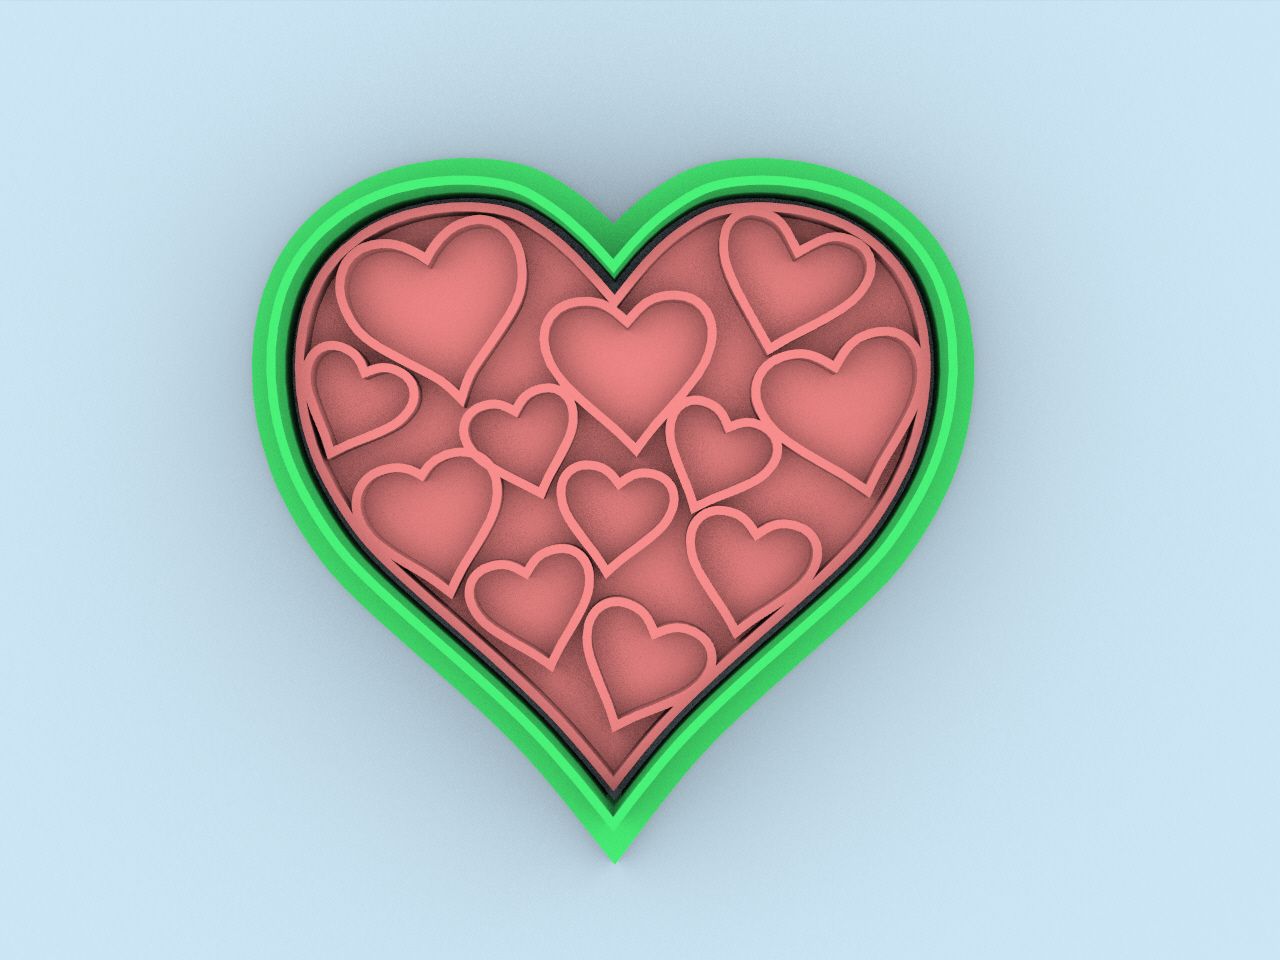 69.jpg Download STL file cortador de galletas corazones - cookie cutter hearts • Design to 3D print, DENA